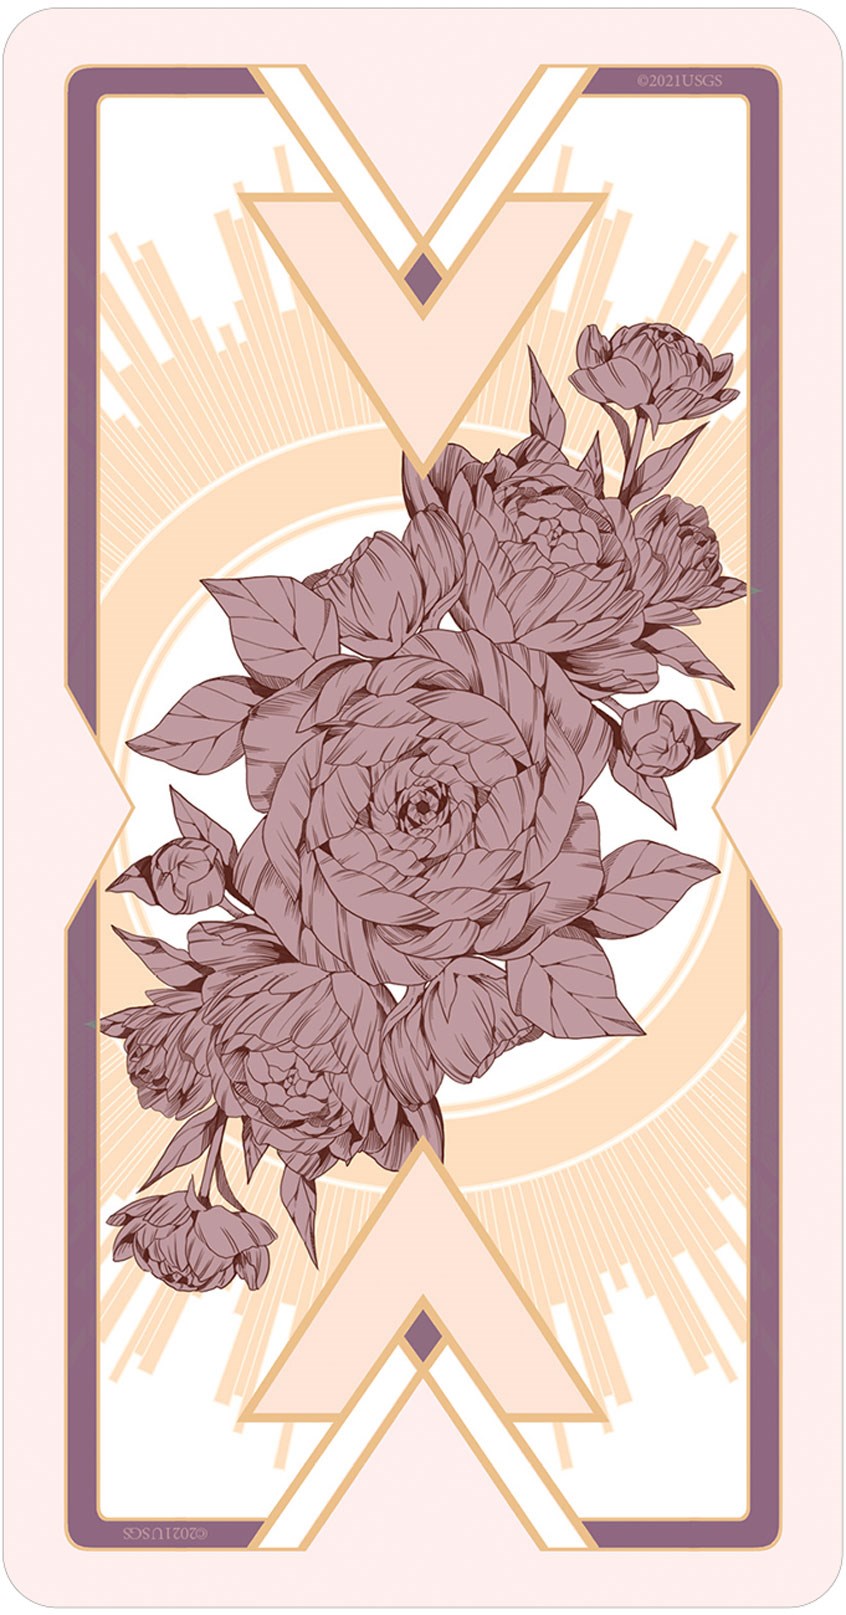 Heavenly Bloom Tarot Deck